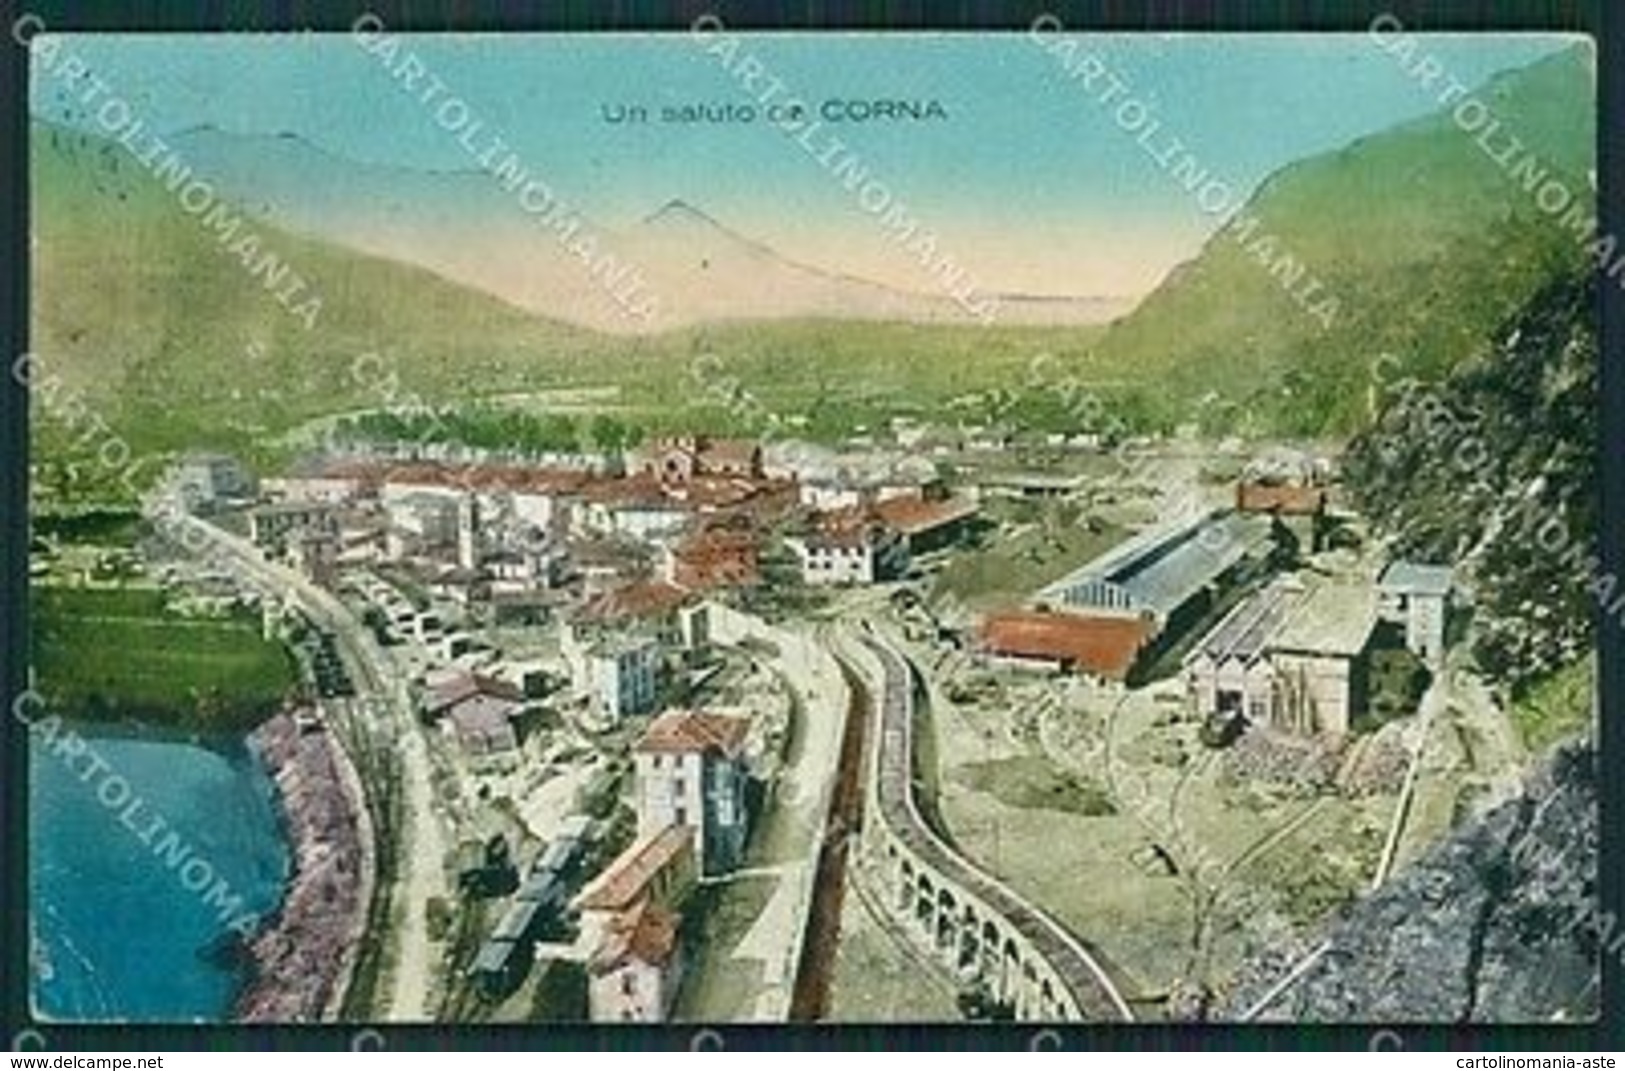 Brescia Valle Camonica Corna Cartolina QK6918 - Brescia